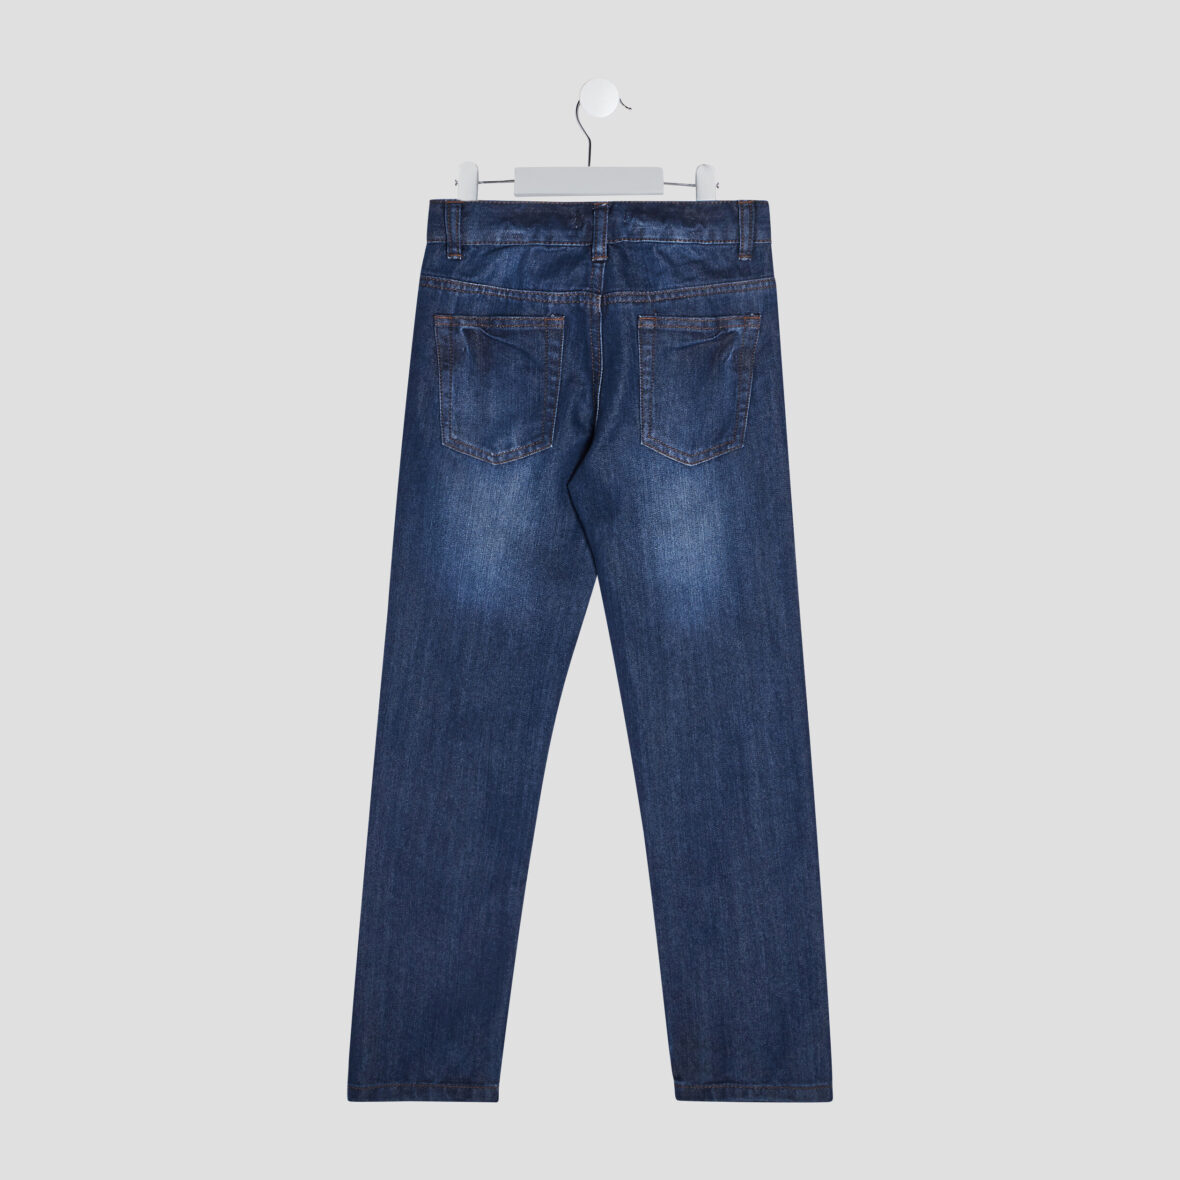 jeans-regular-effet-delave-denim-stone-garcon-a-36165600412110419